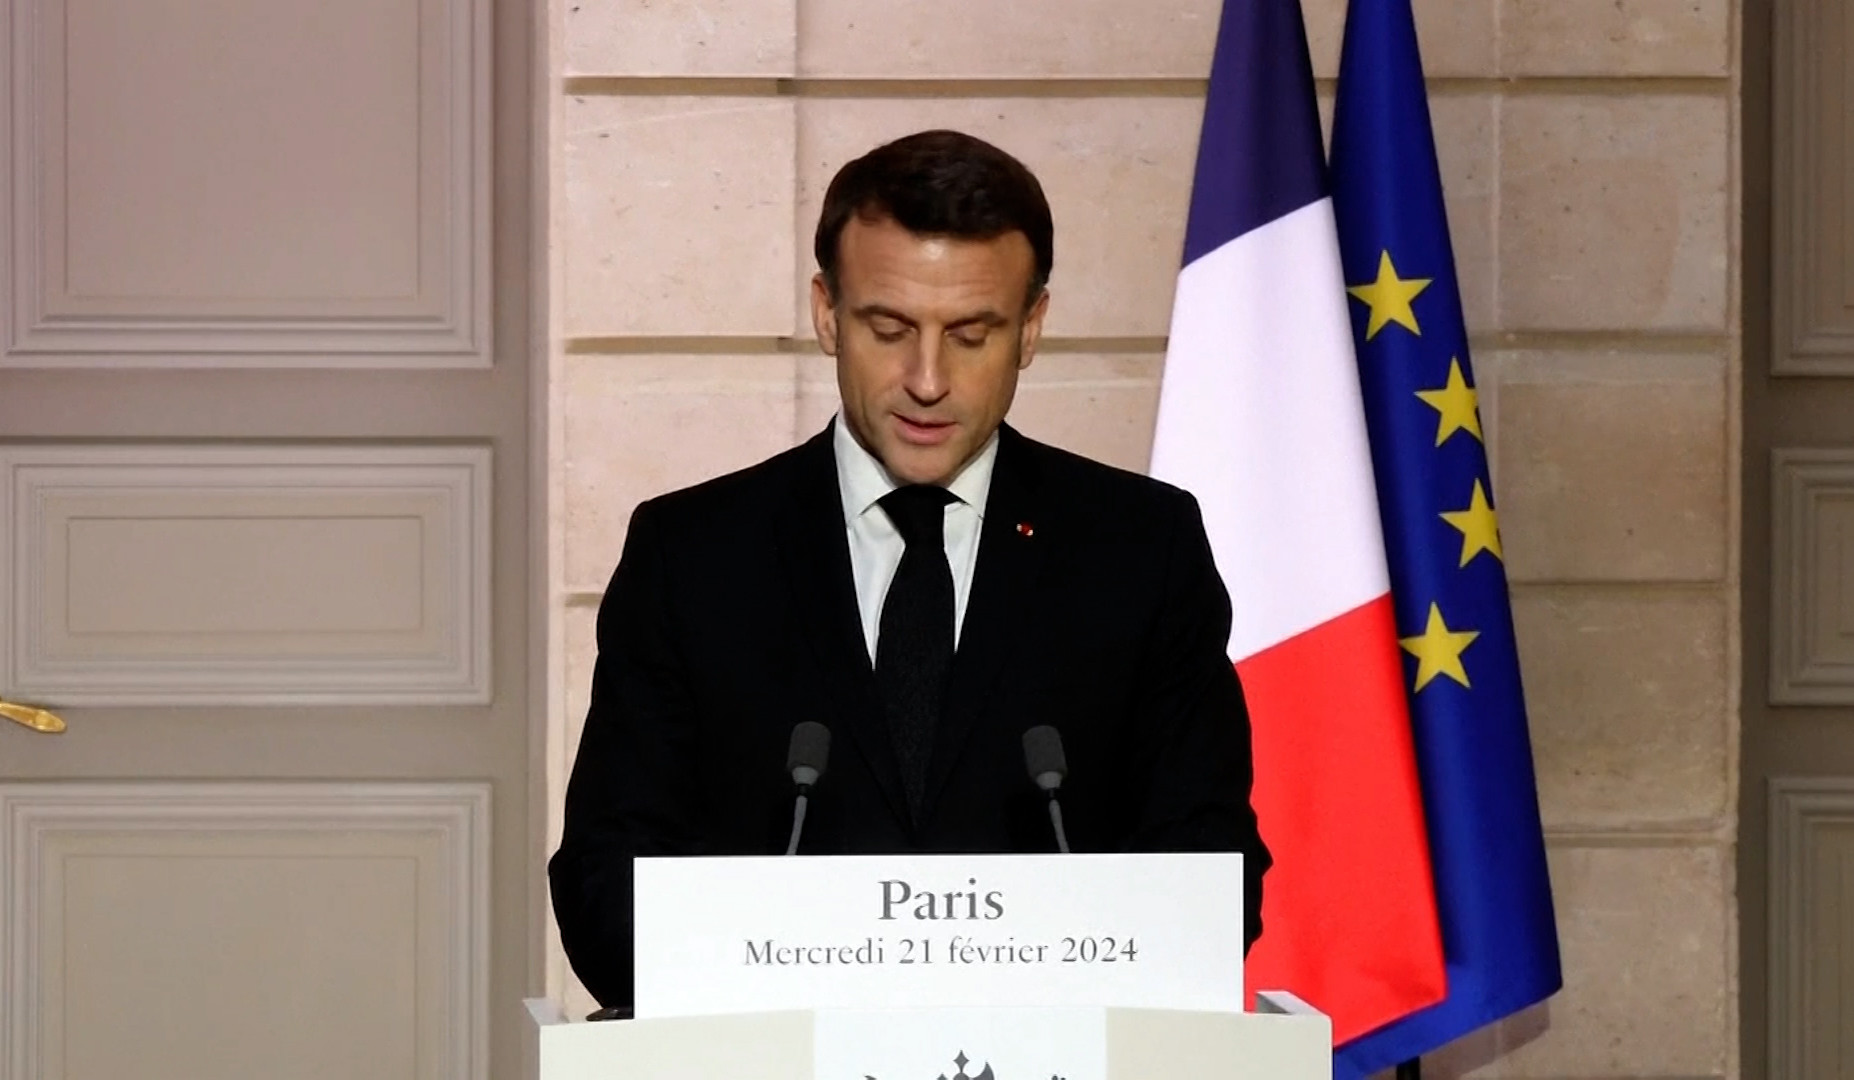 Франция выражает сожаление по поводу непропорционального ответного удара Азербайджана: Макрон